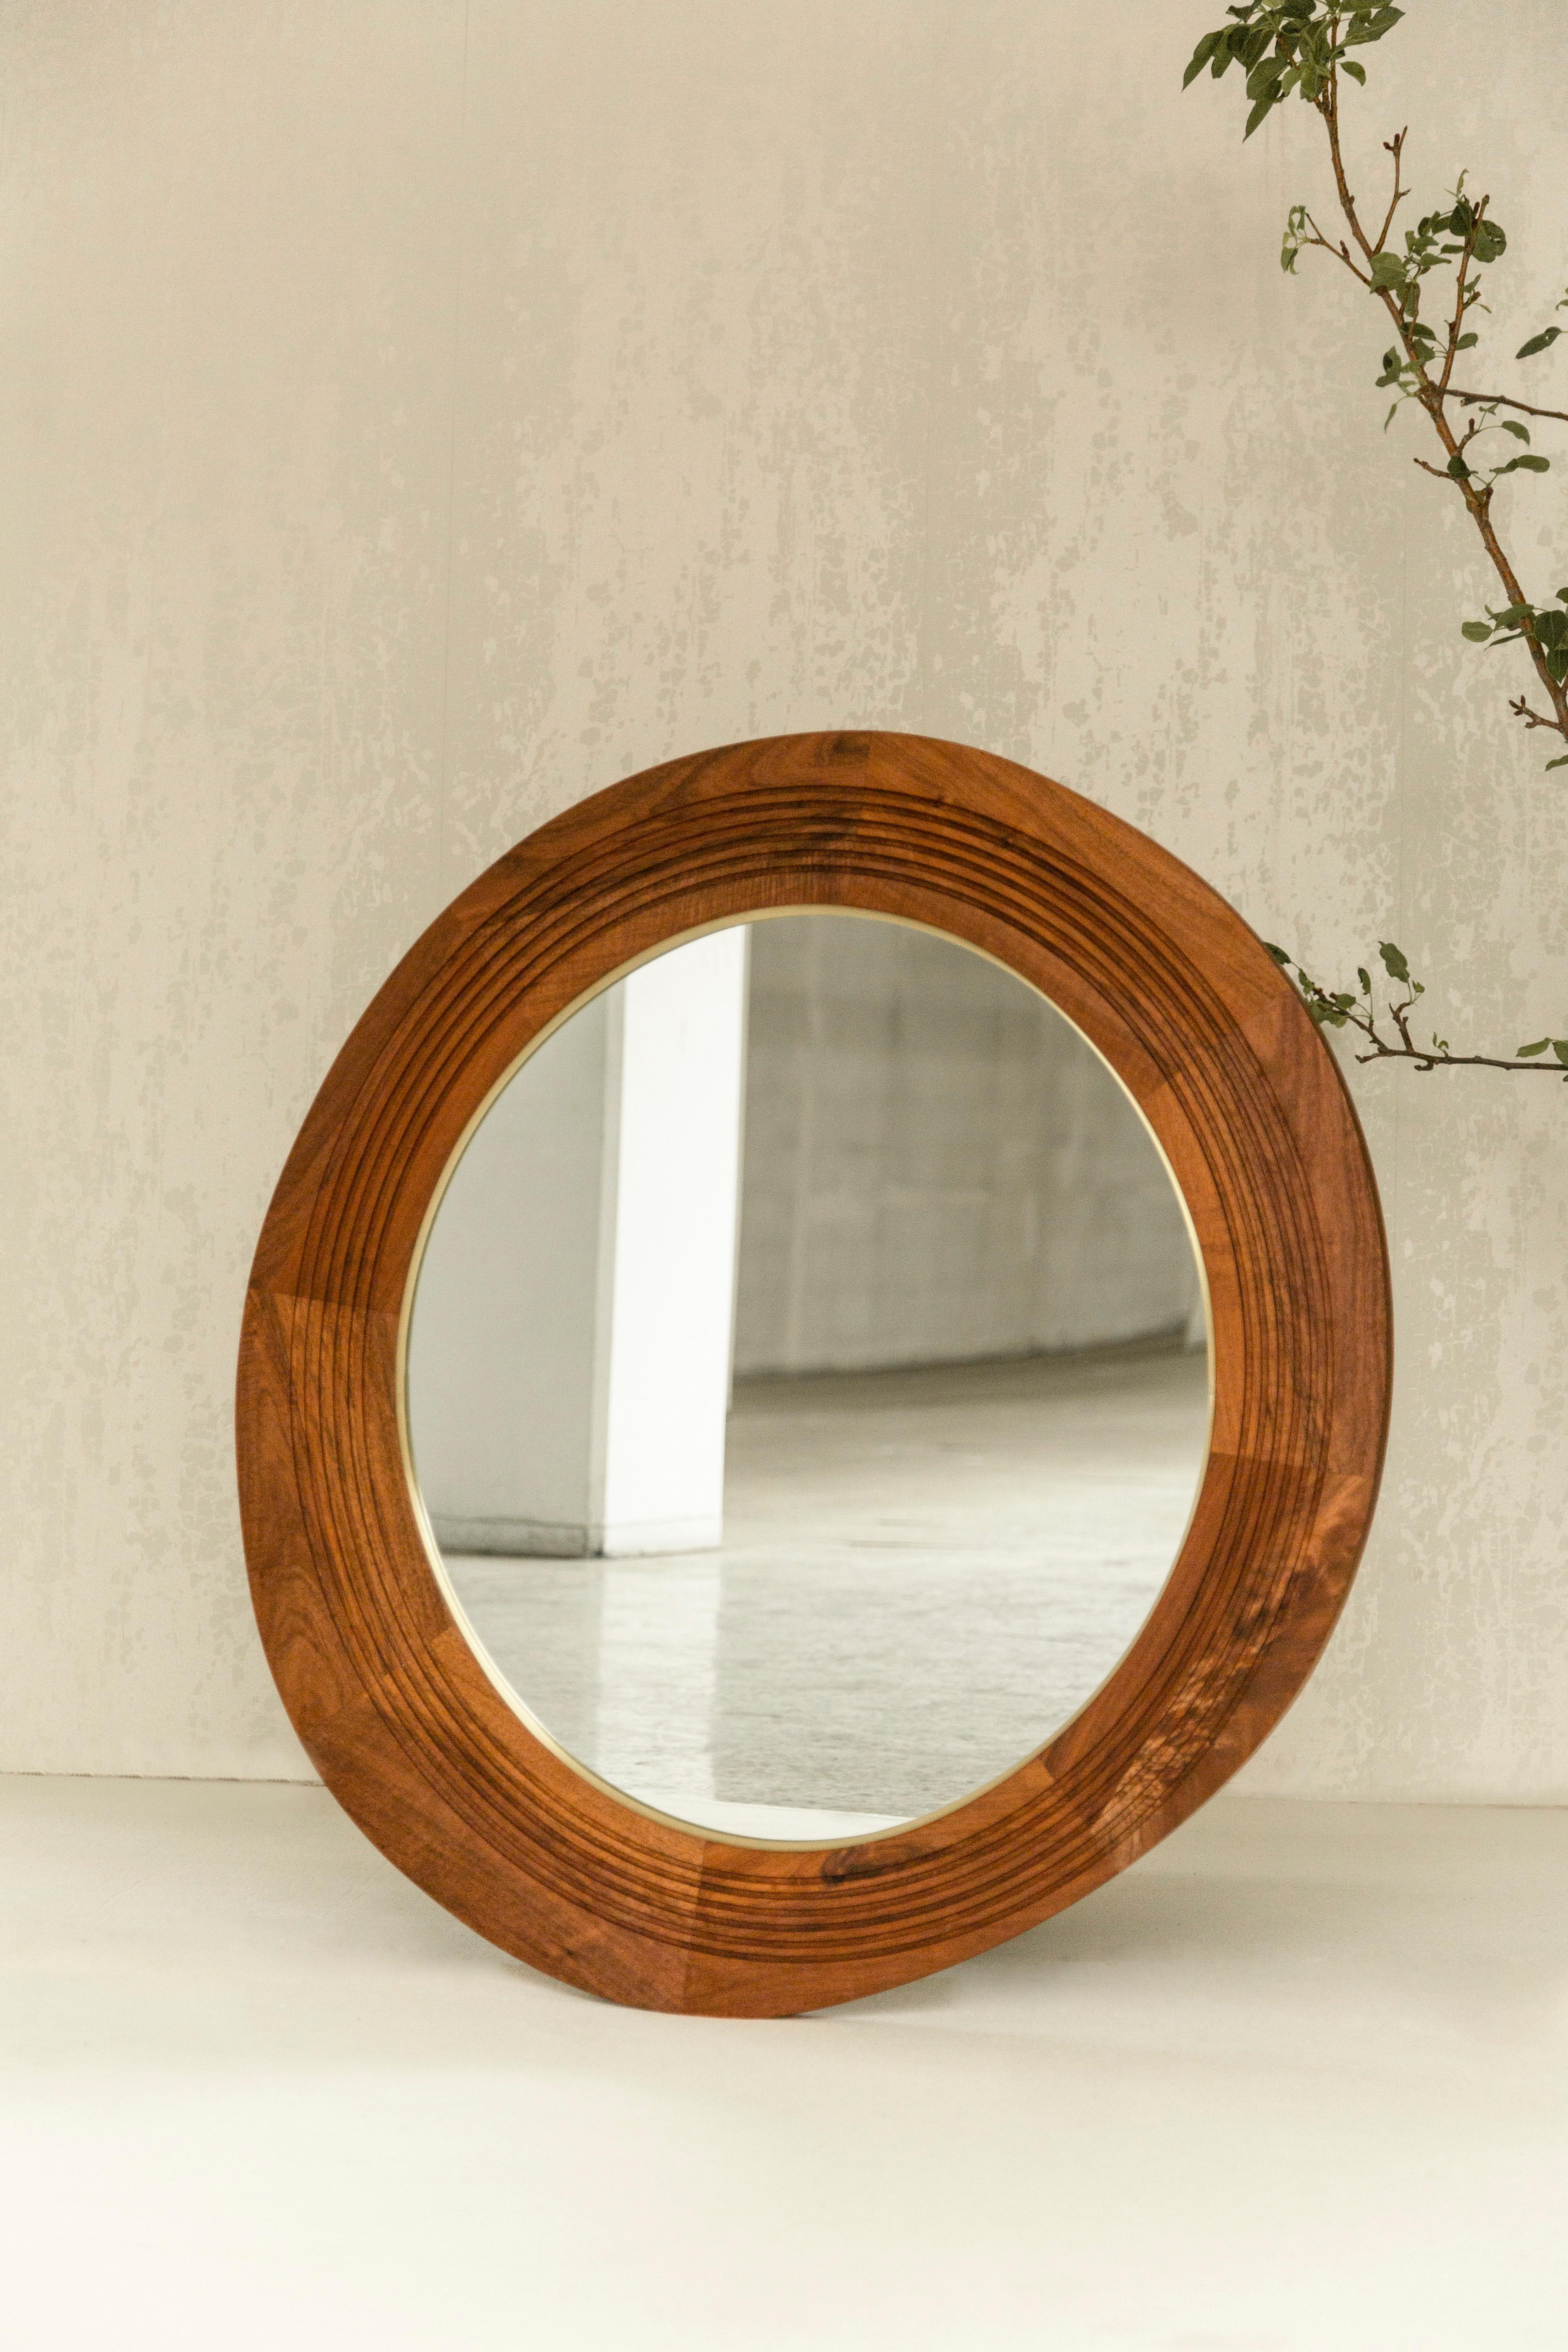 Der Joseph-Spiegel ist ein großartiger Akzent, der jede Wand schmückt. Die asymmetrische ovale Form des Rahmens erzeugt eine interessante Spannung und einen Kontrast zu dem symmetrischen ovalen Messingring und dem Spiegel. Der Spiegel hat